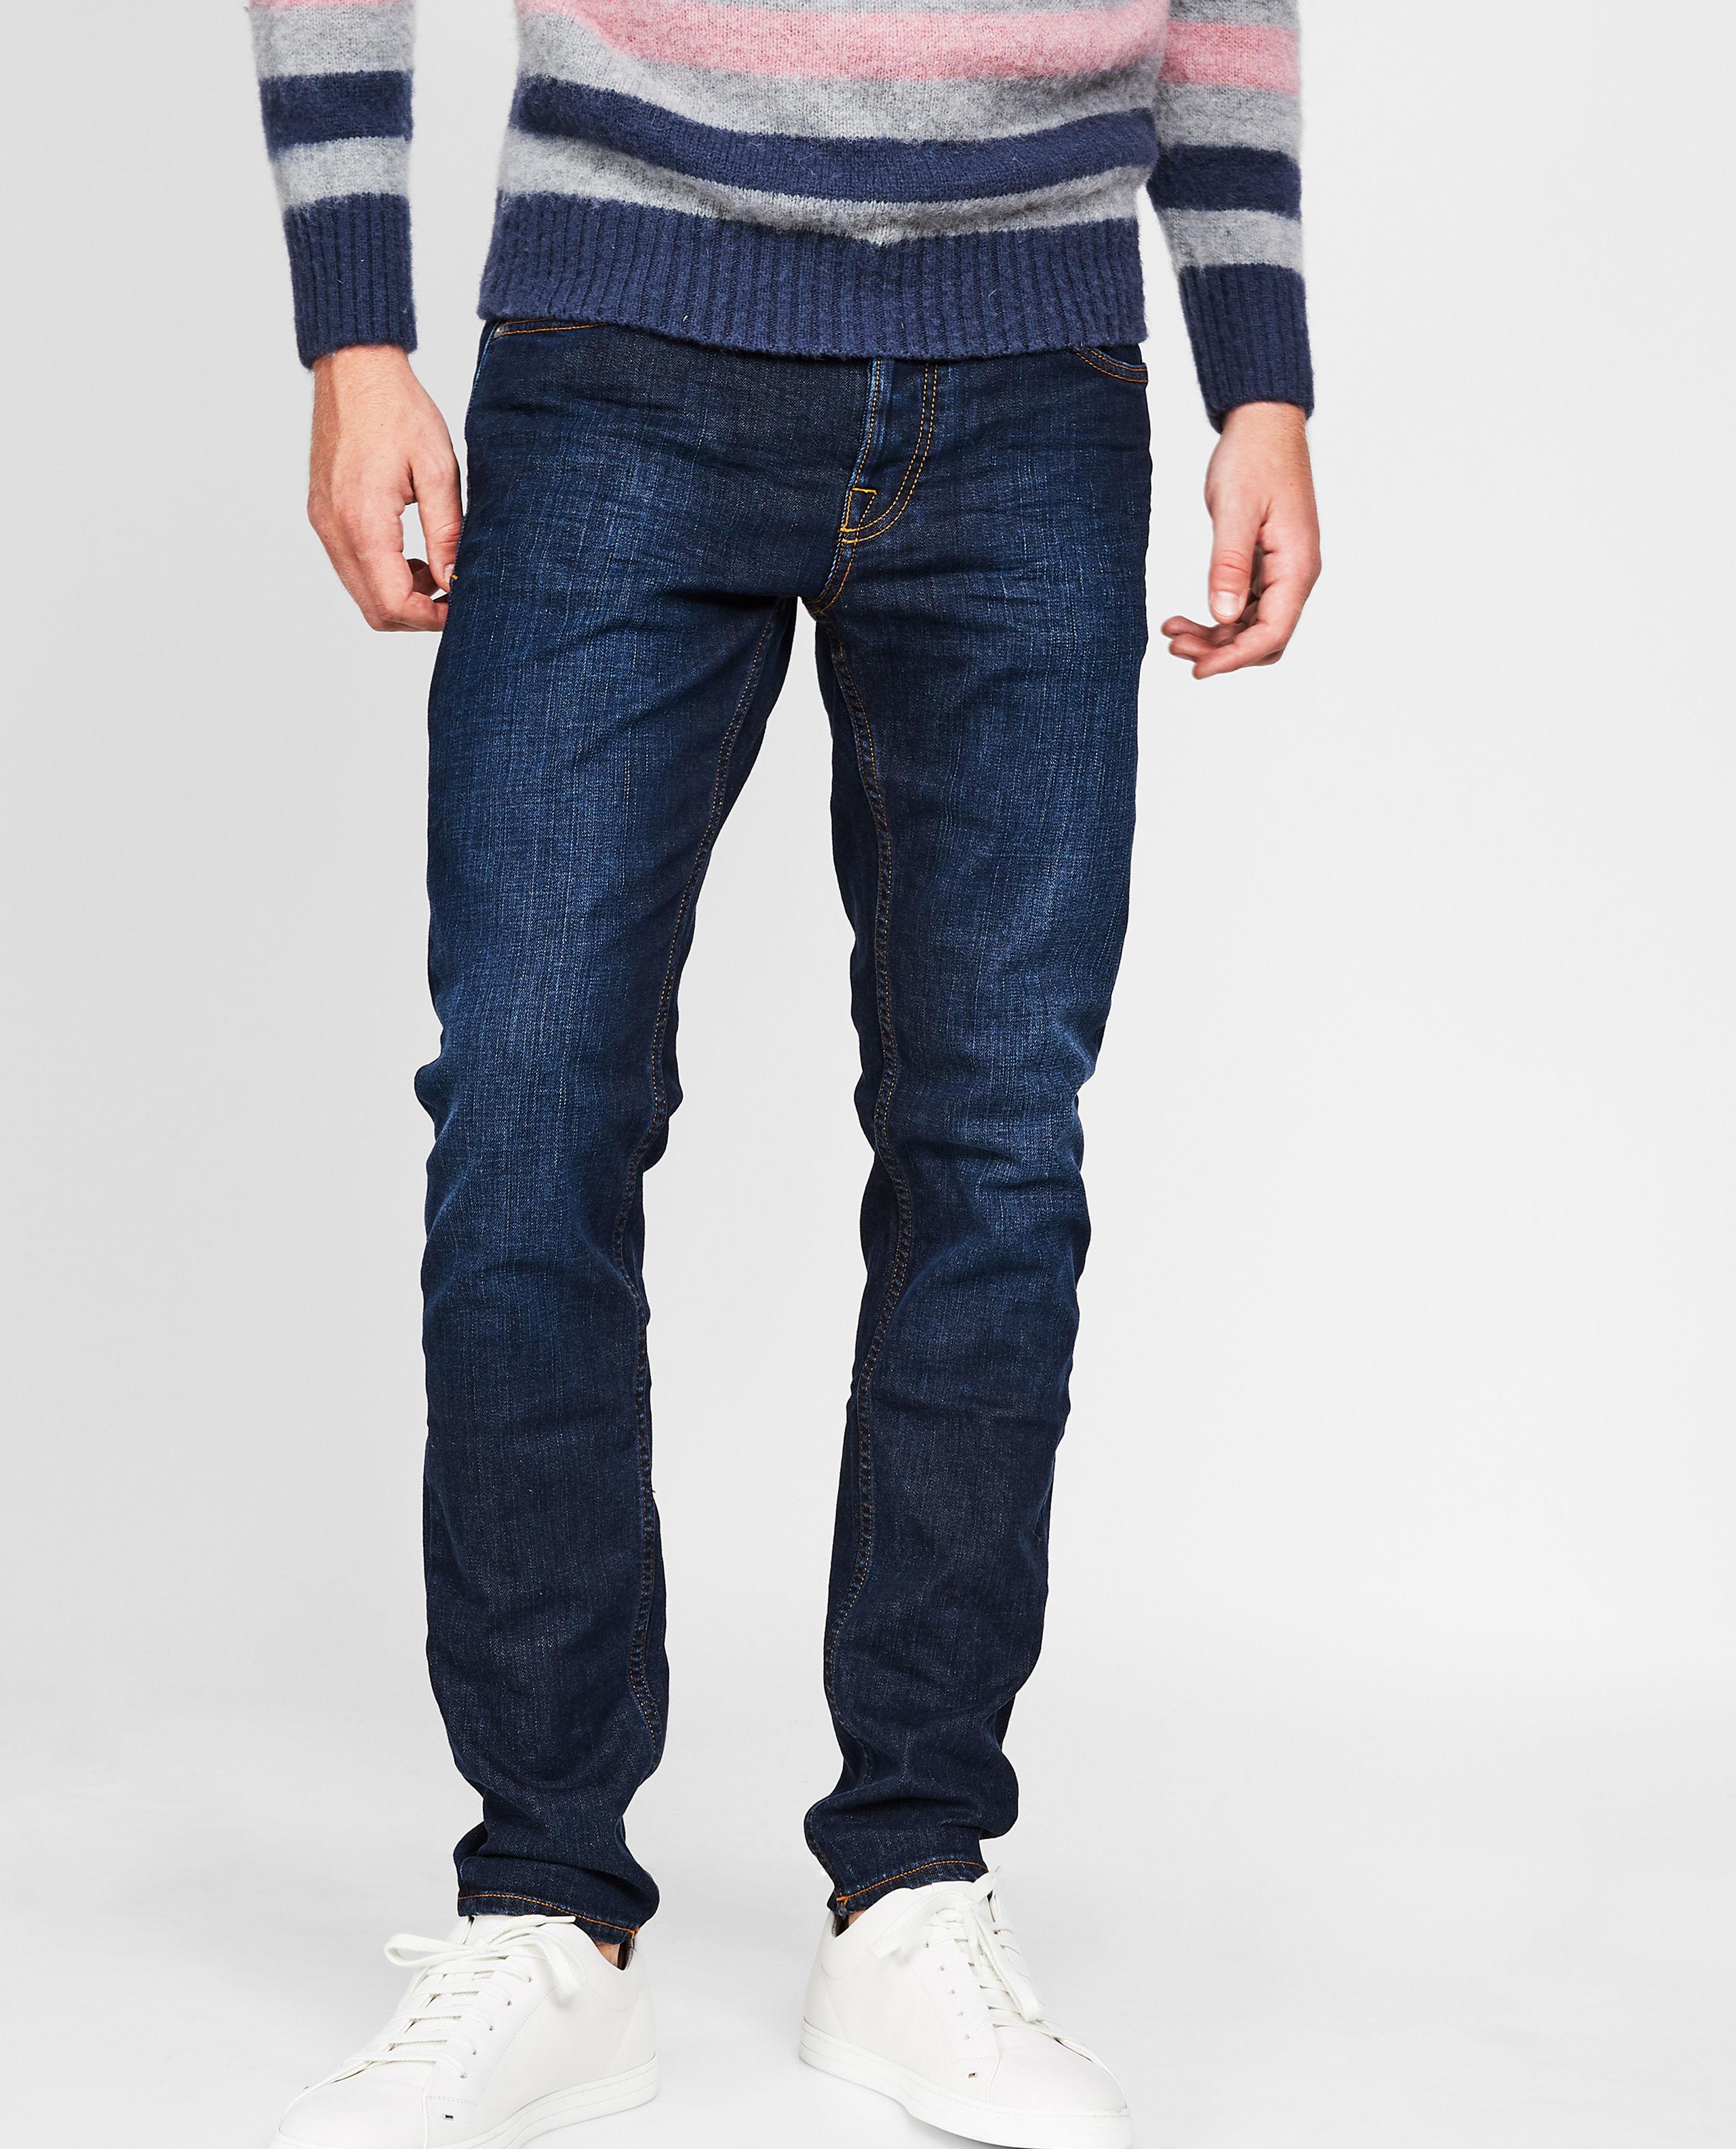 Uomo Abbigliamento da Jeans da Jeans dritti Pantaloni jeansCare Label in Denim da Uomo colore Blu 